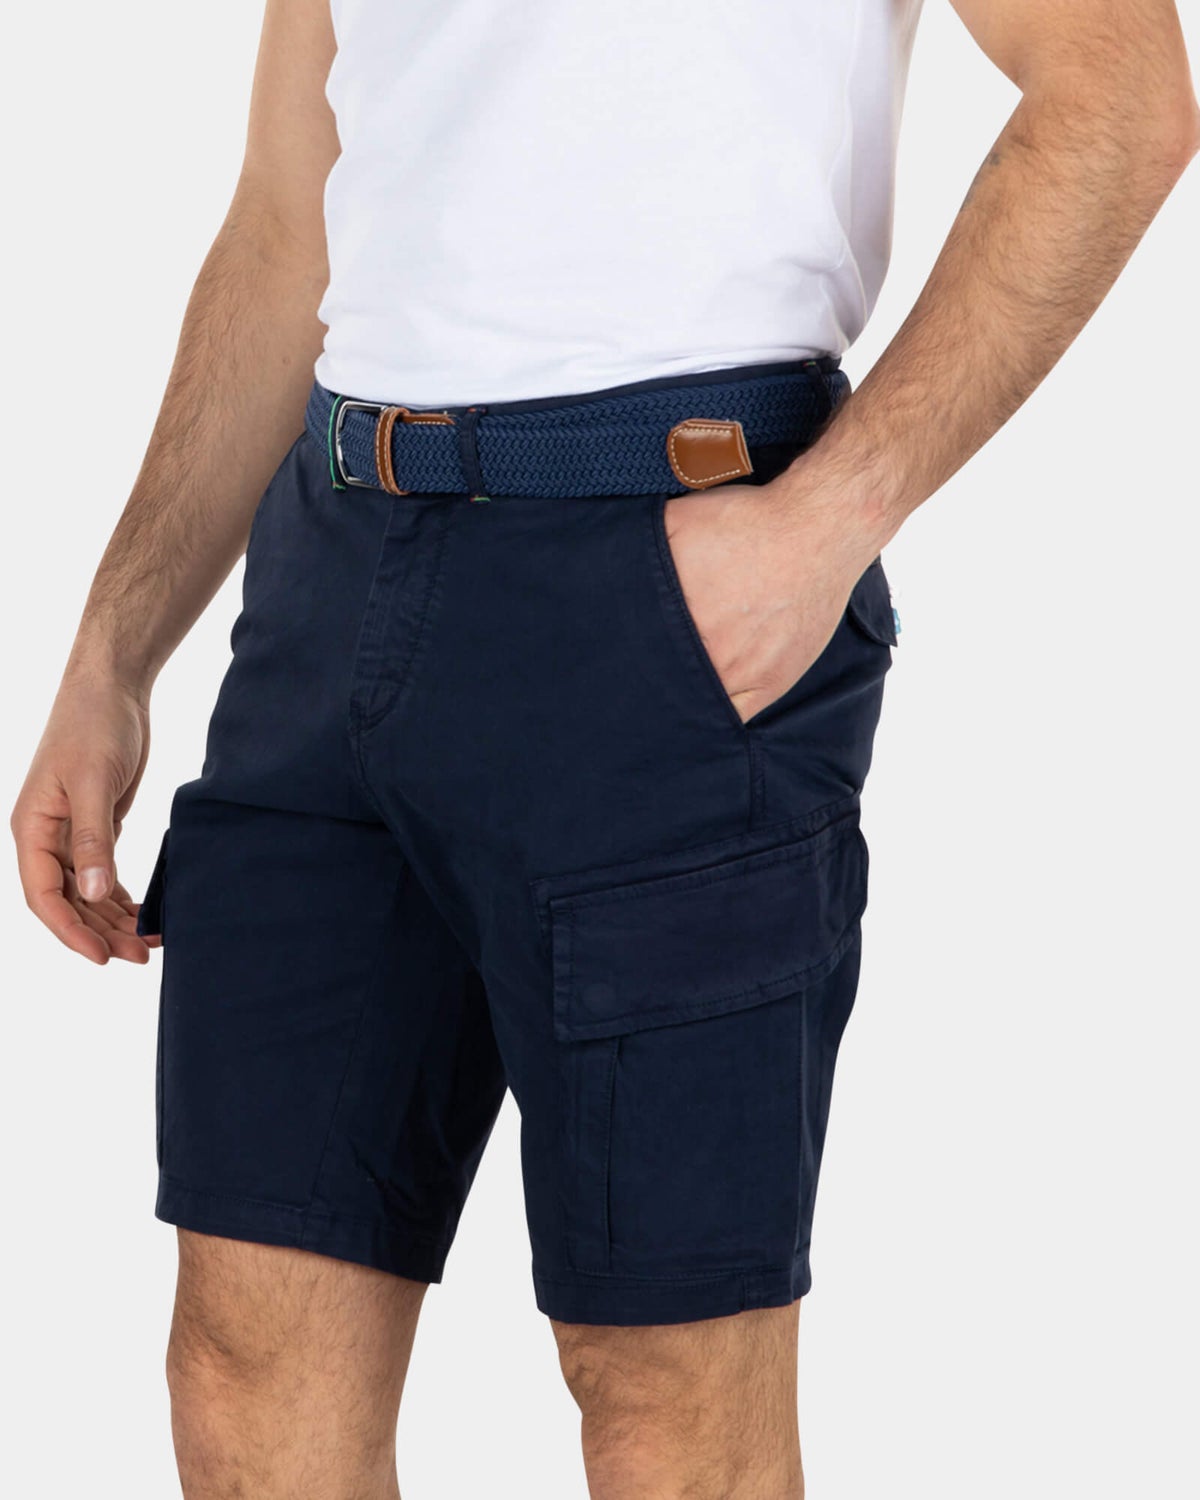 Cotton stretch cargo shorts - Key Navy